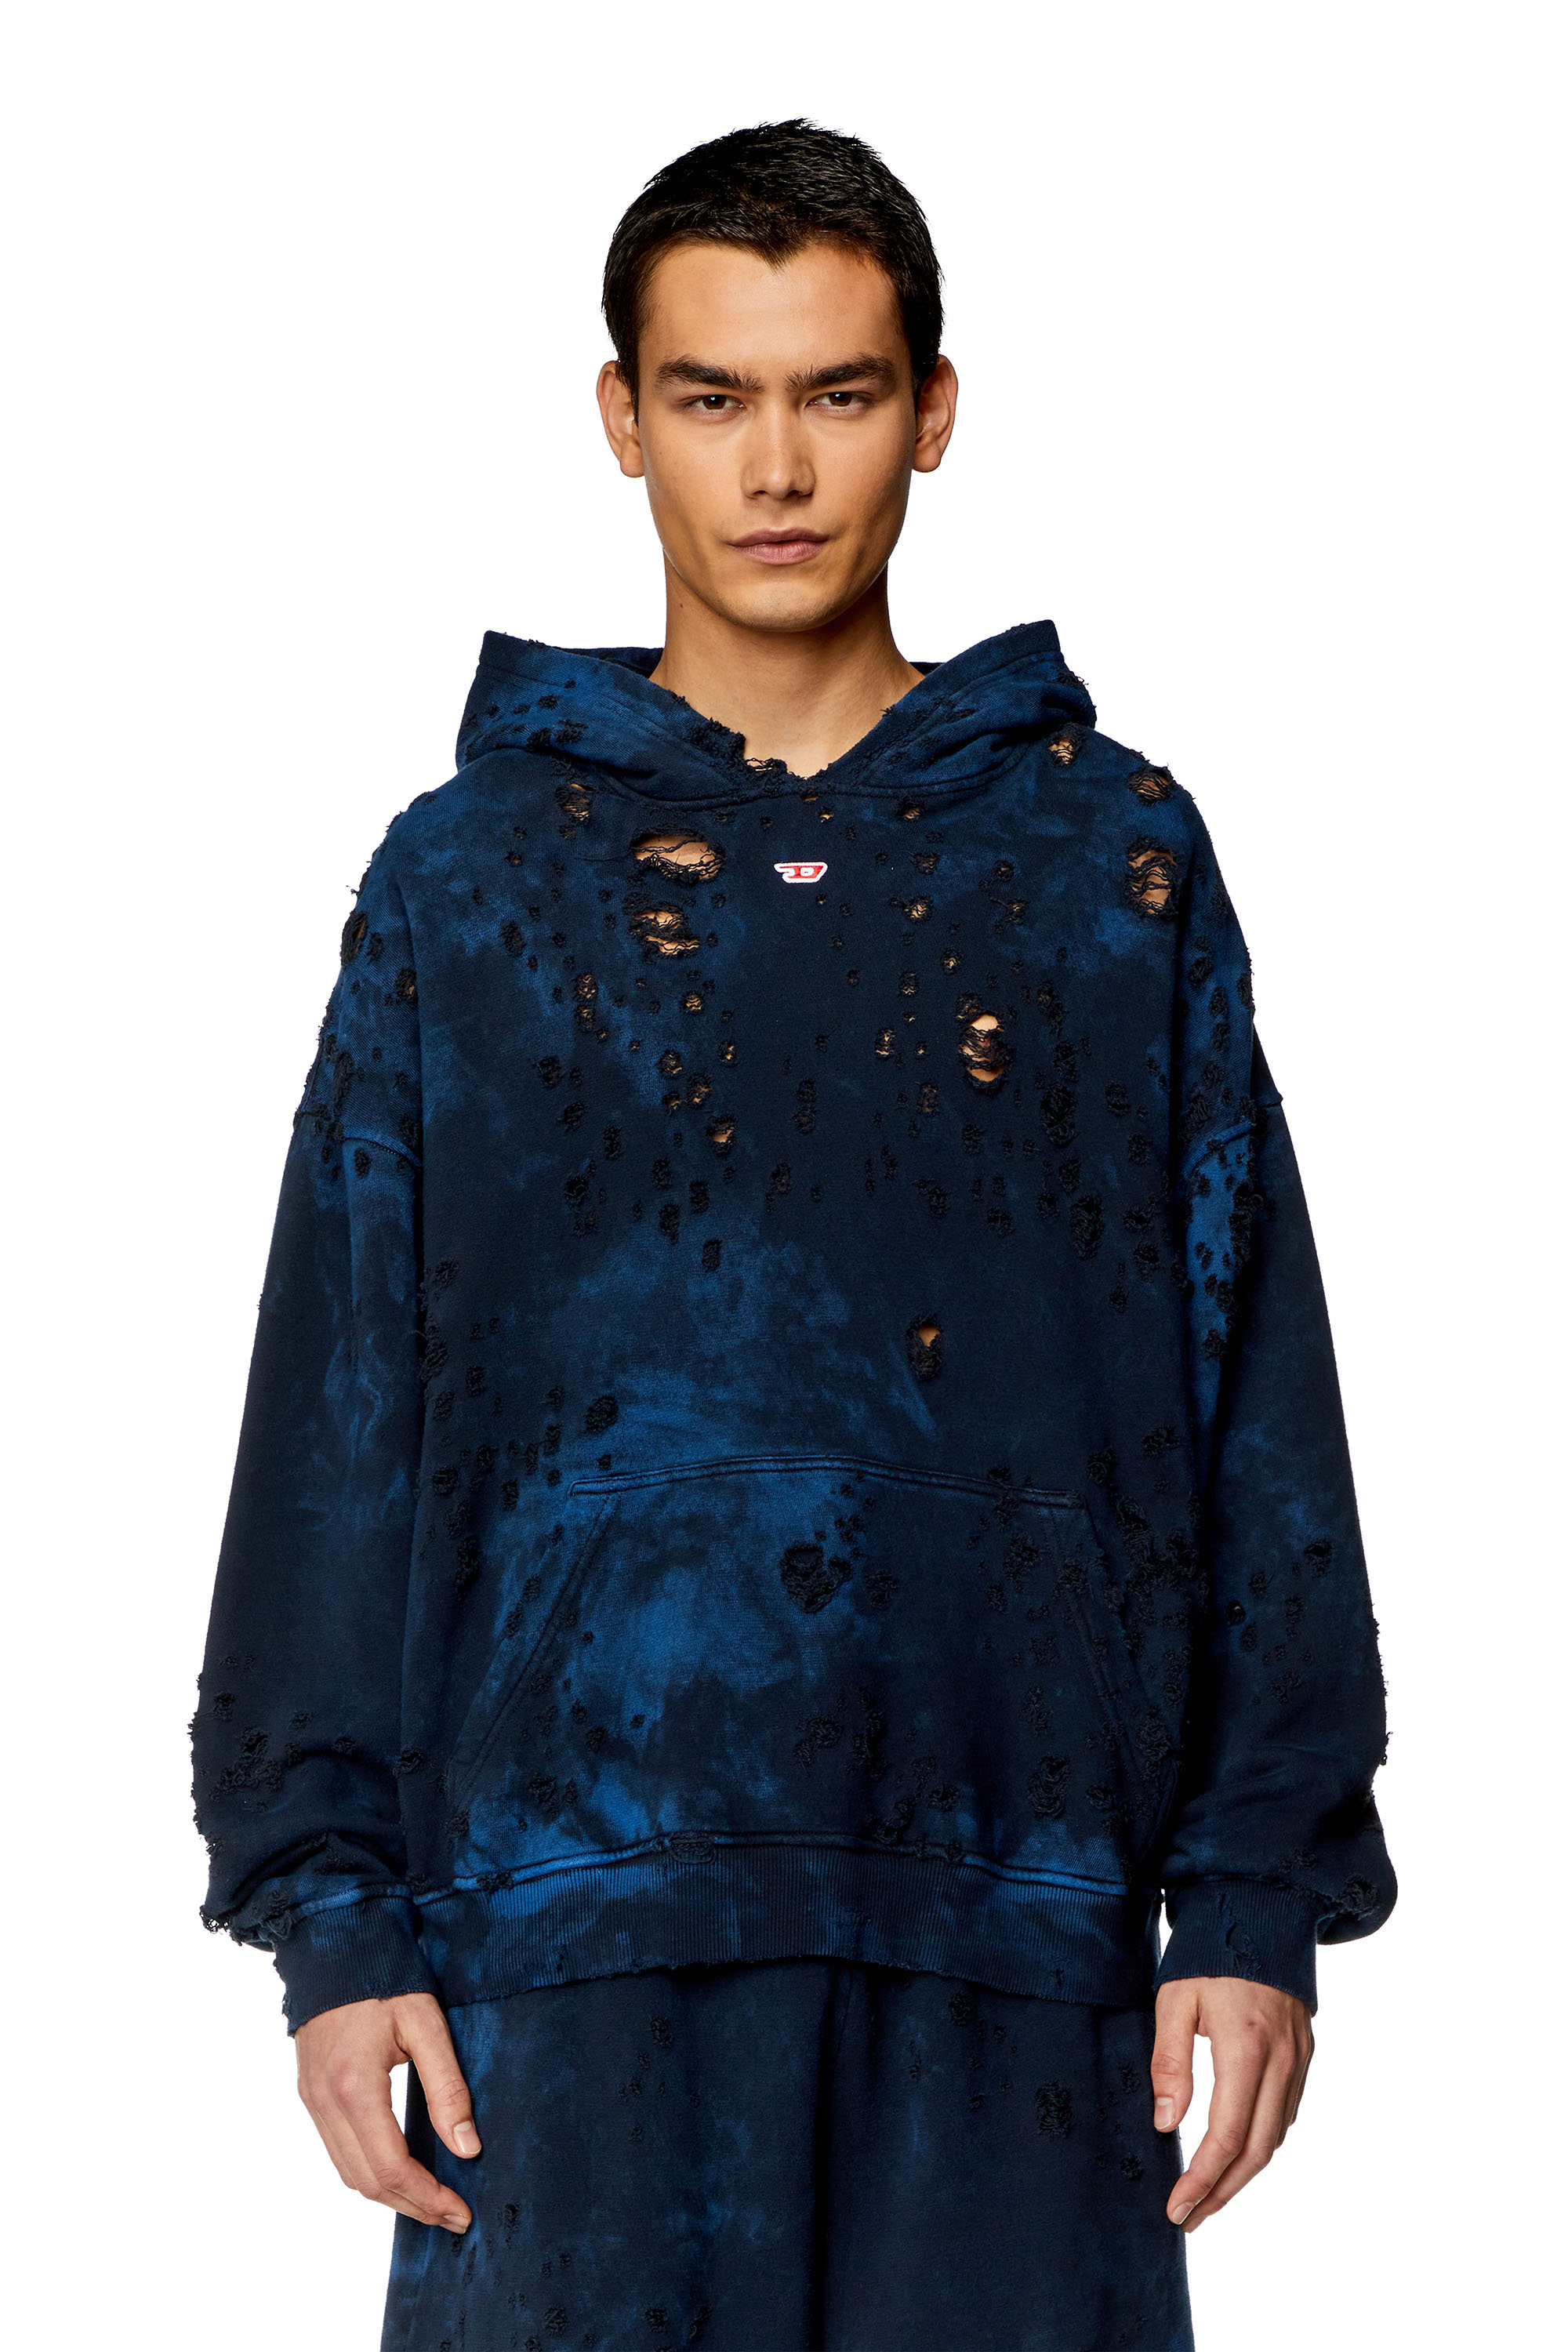 Diesel - Sweat-shirt à capuche destroy effet marbré - Pull Cotton - Homme - Bleu